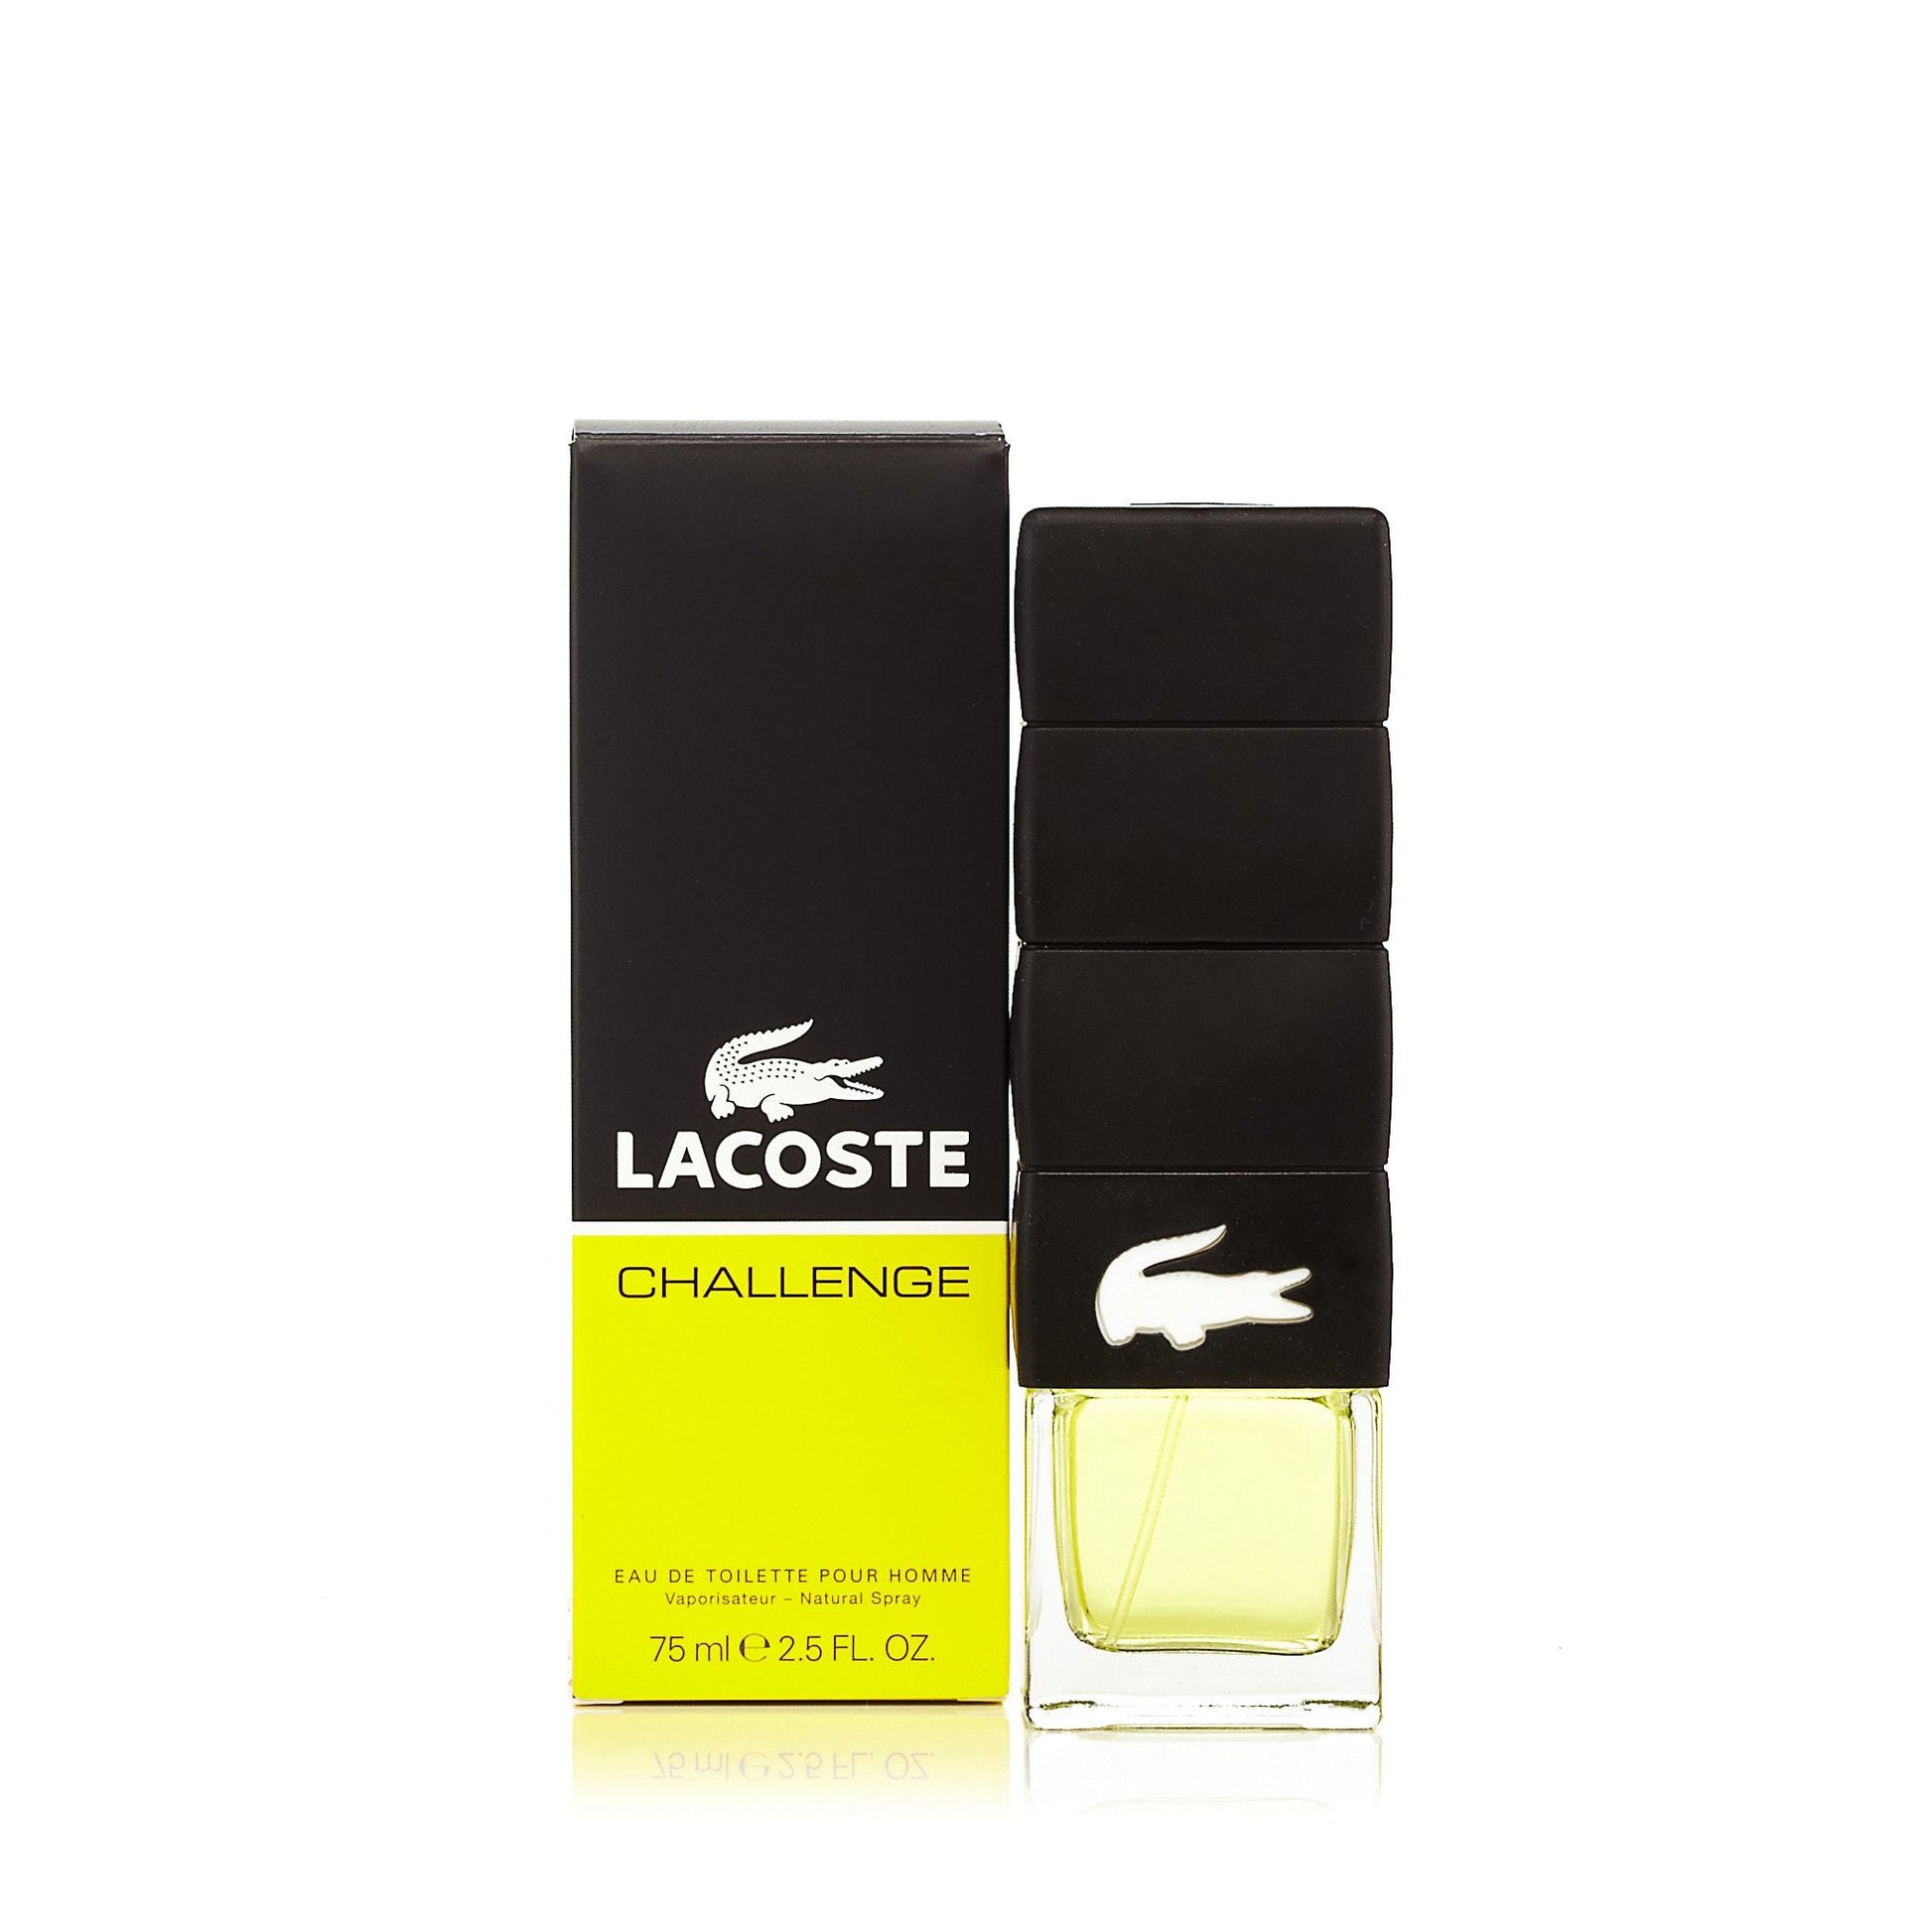 Challenge Eau de Toilette Spray for Men by Lacoste, Product image 3